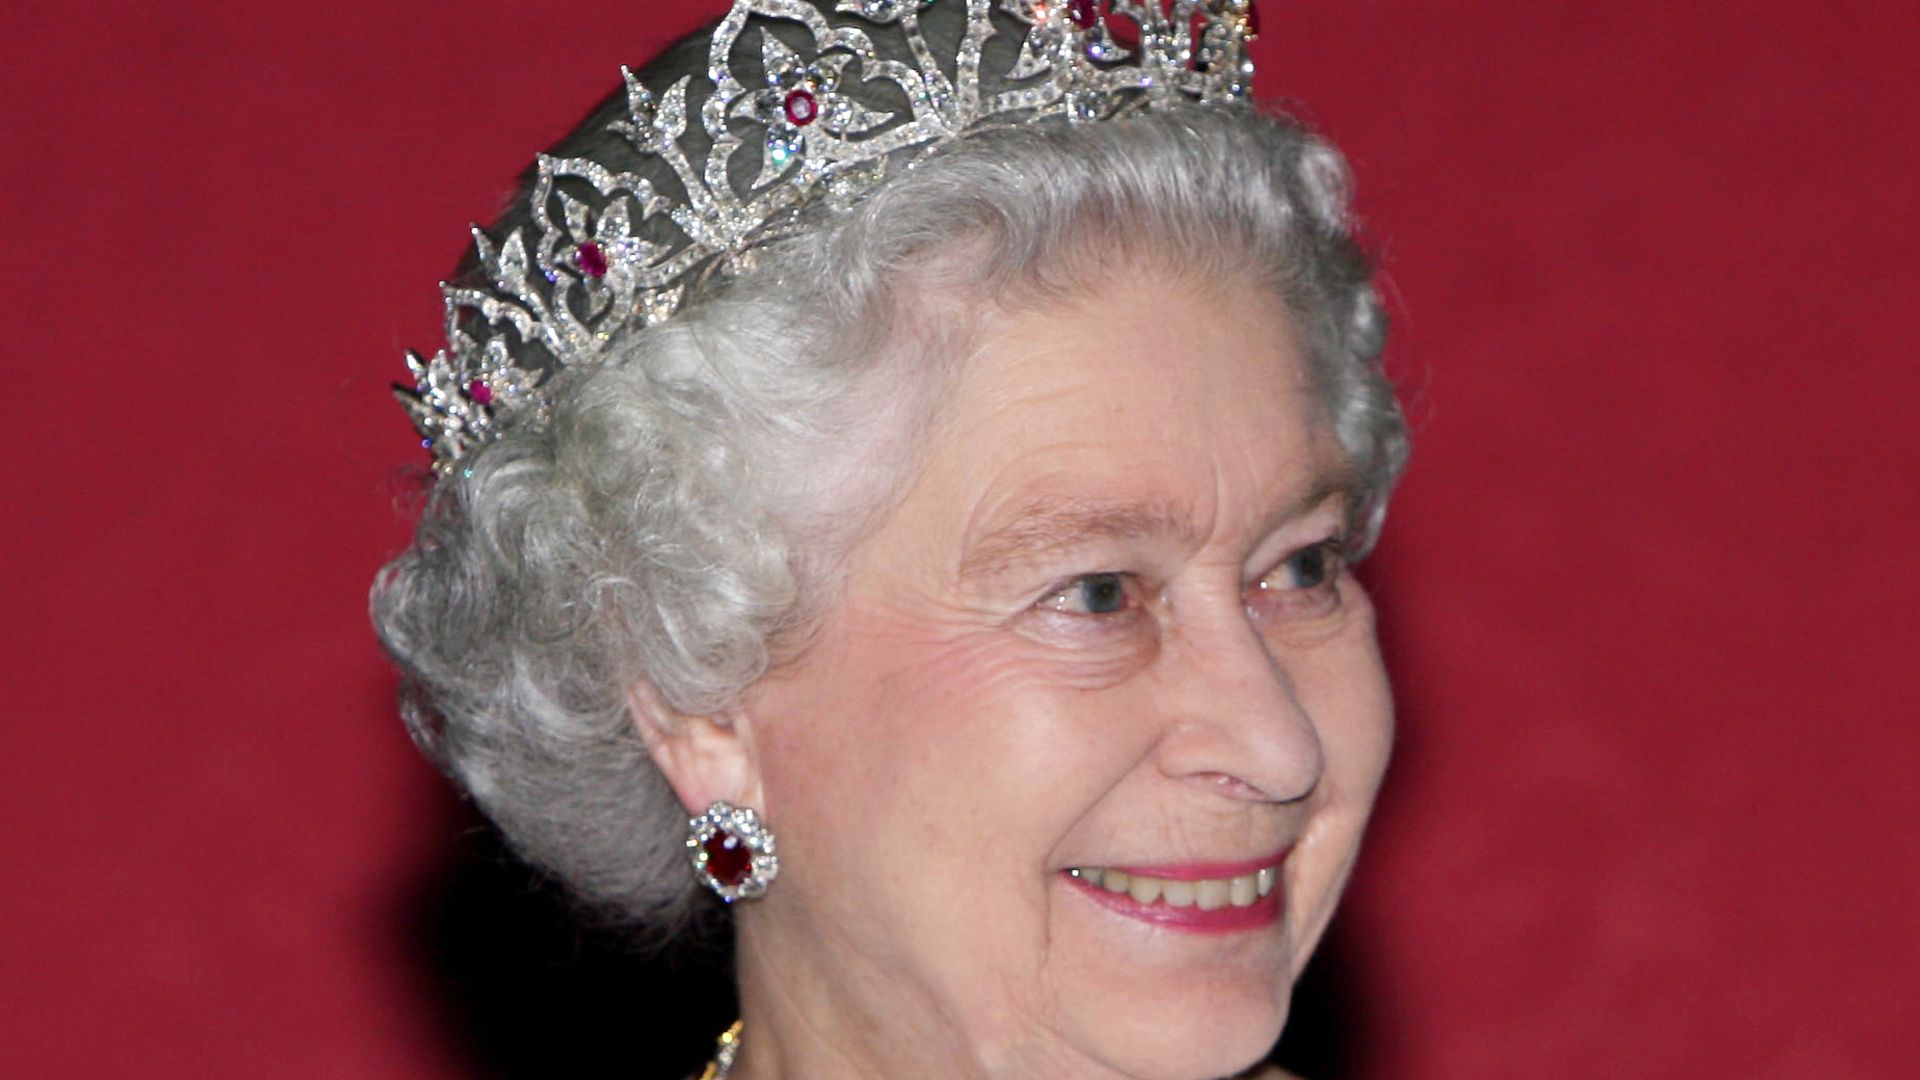 Queen wearing the Oriental Circlet tiara